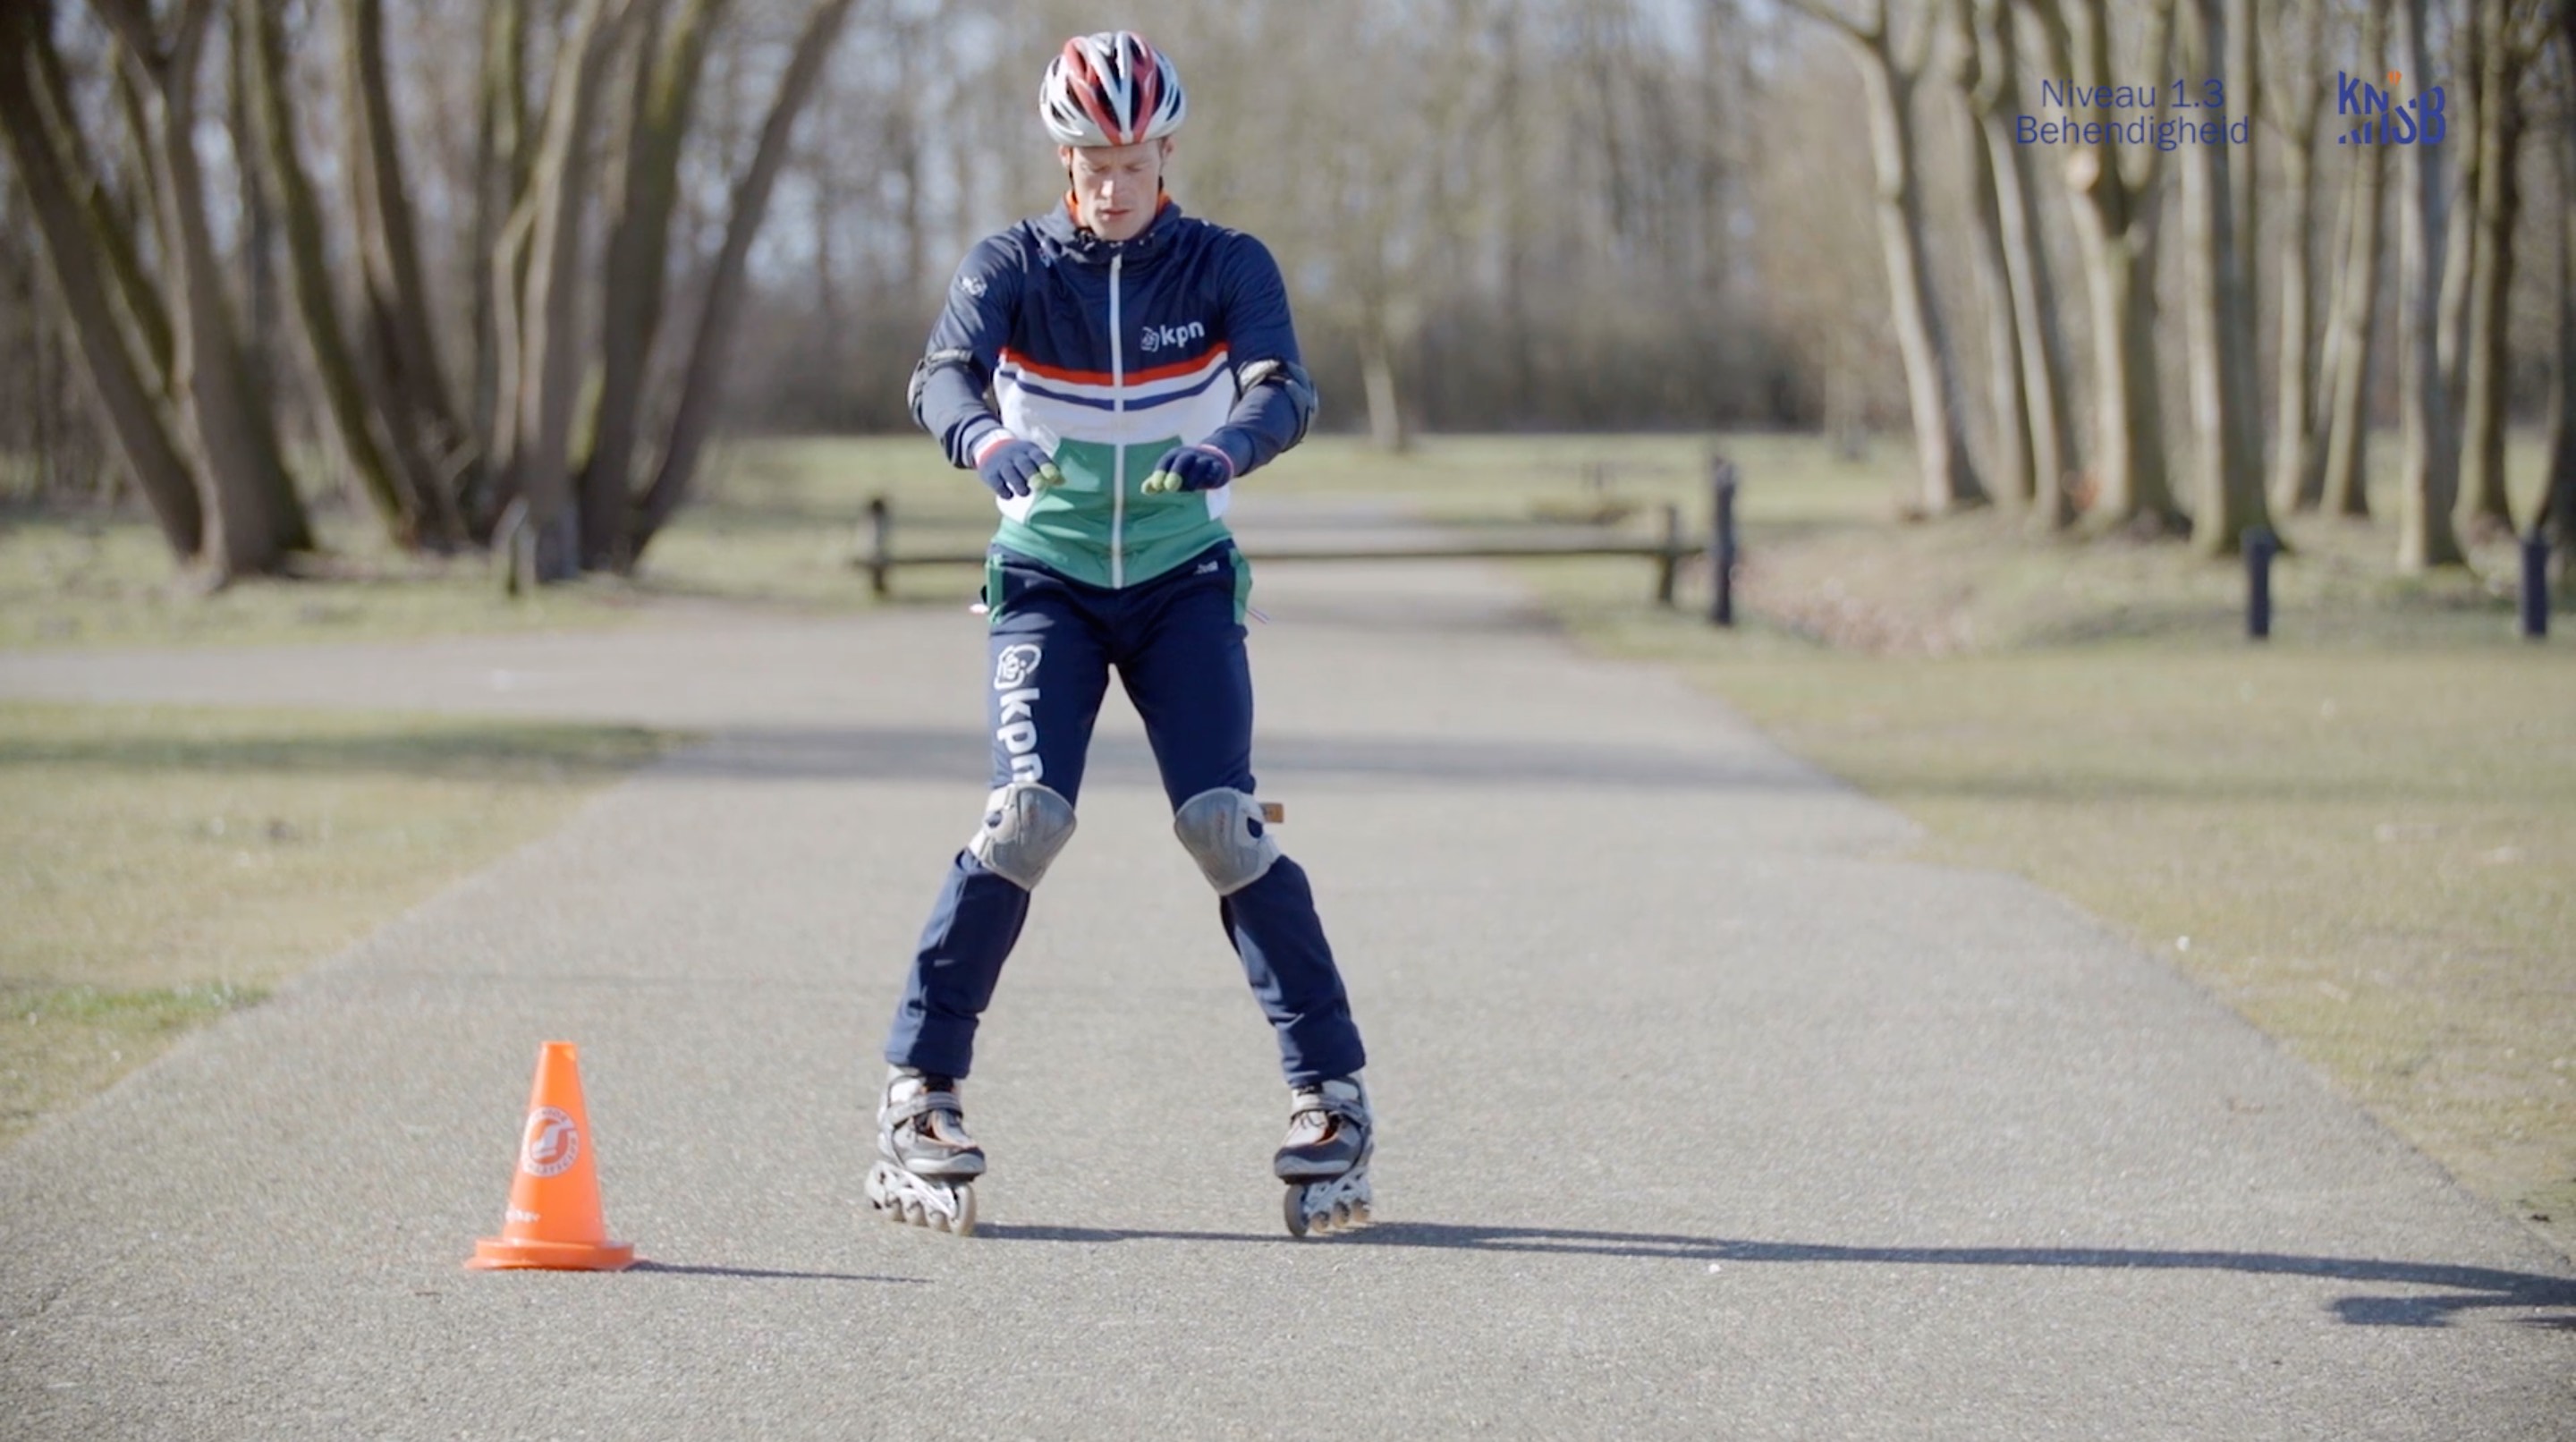 Armstrong Verslijten Dankbaar Start to Skate, niveau 1: De basis | Schaatsen.nl